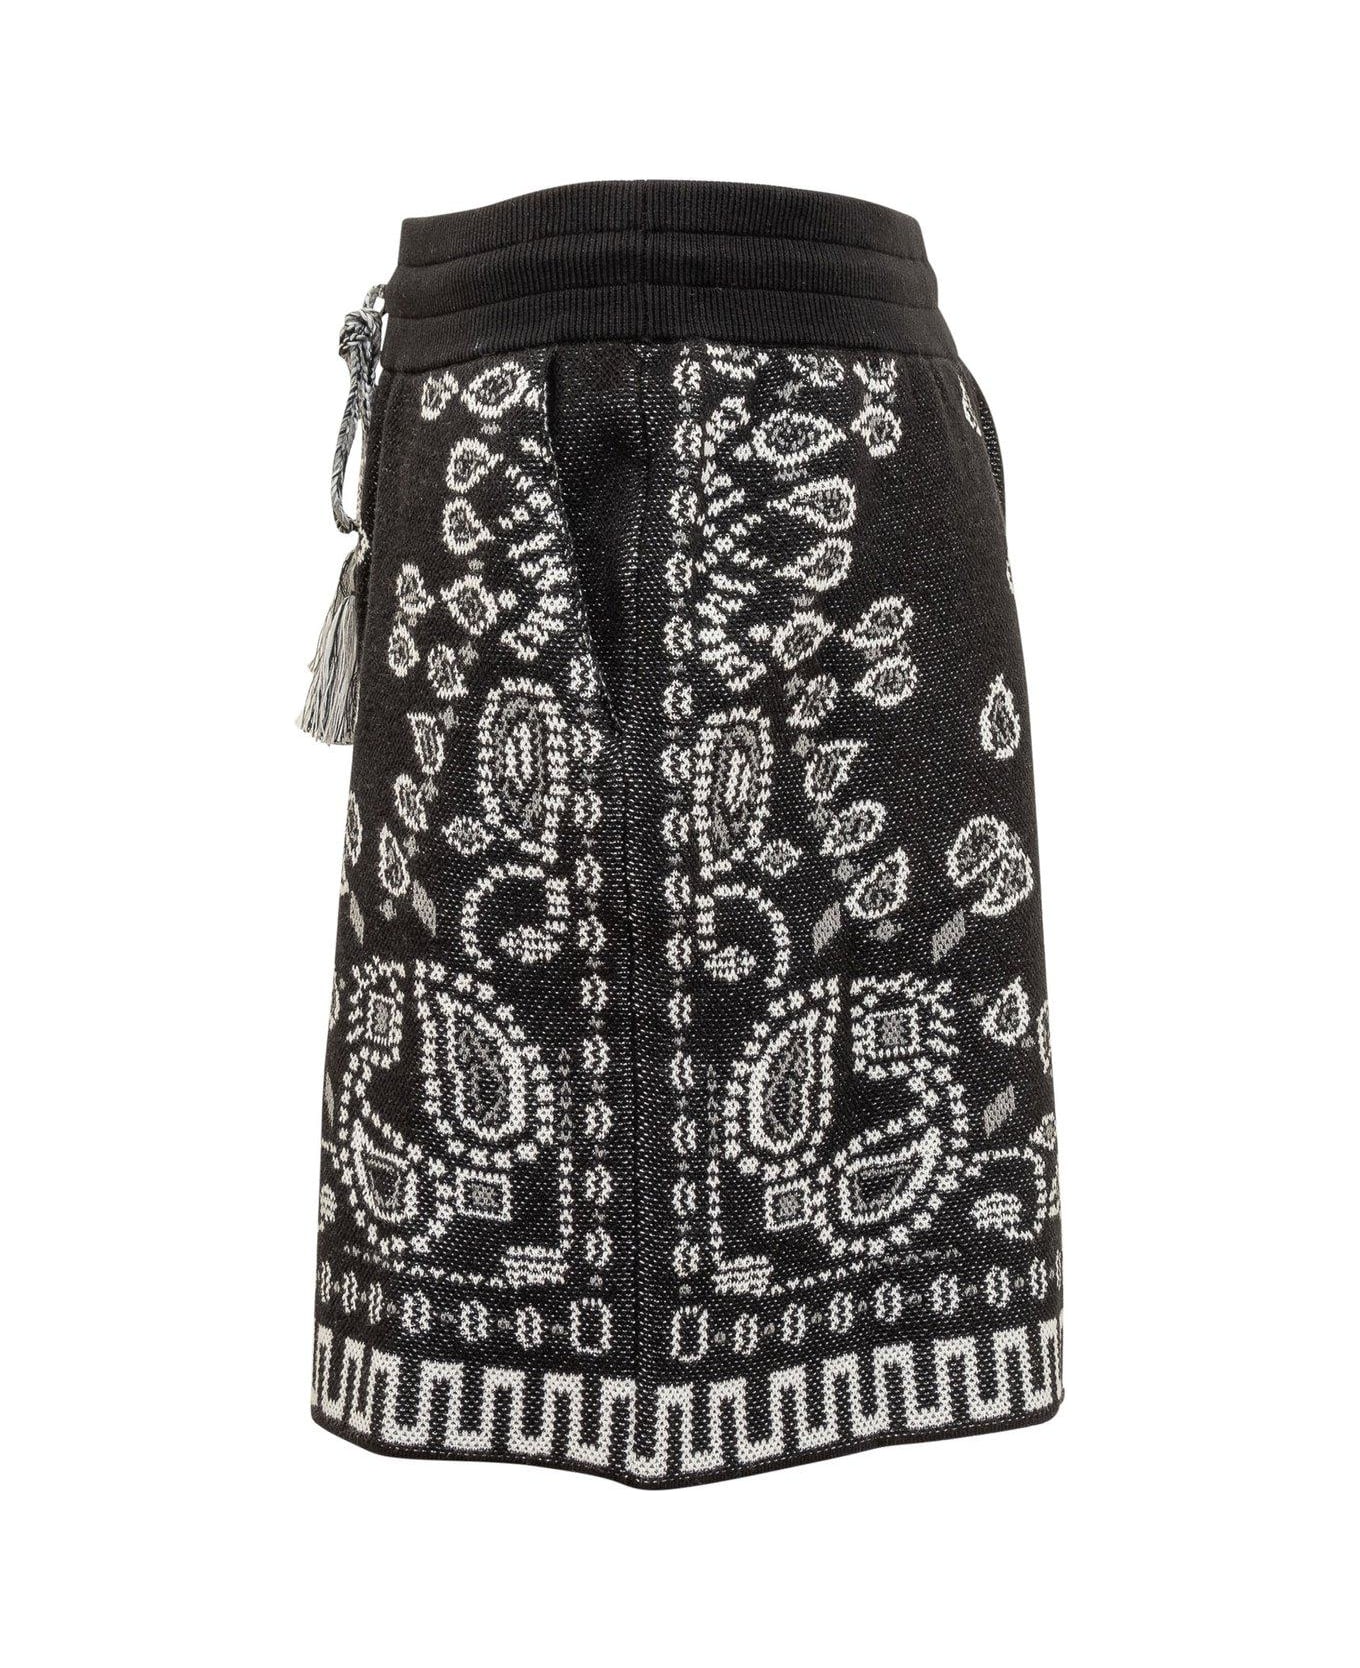 Alanui Bandana-pattern Drawstring Shorts - BLACK MULTI